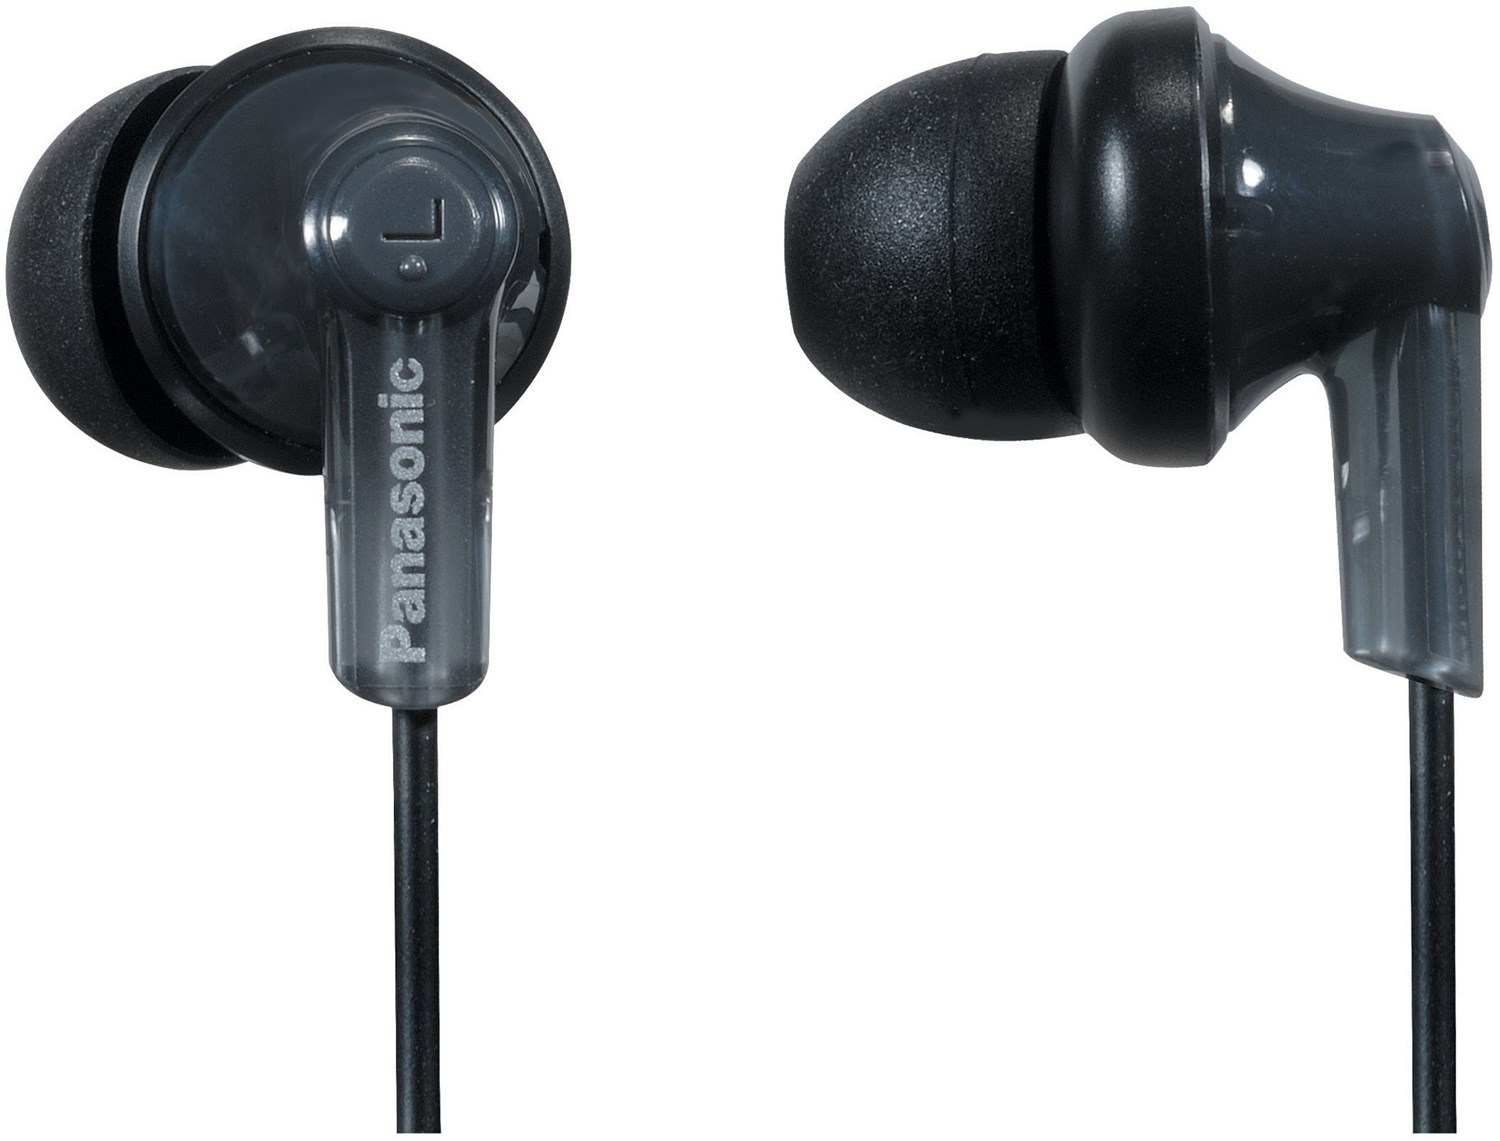 RP-HJC120E-K In-Ear-Kopfhörer mit Kabel schwarz